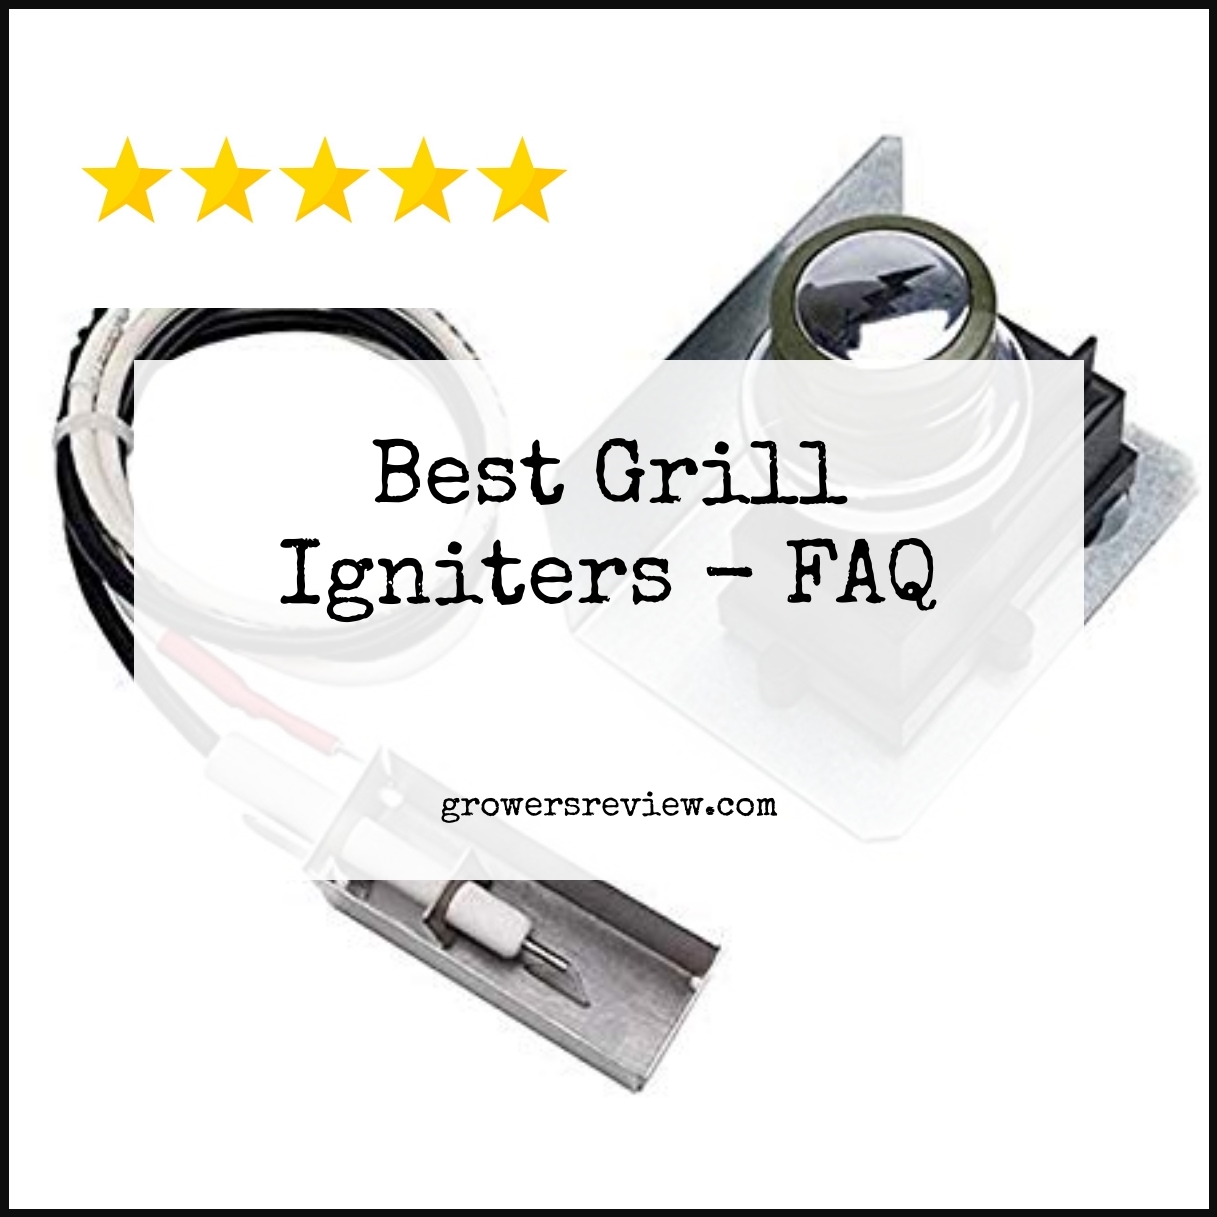 Best Grill Igniters - FAQ